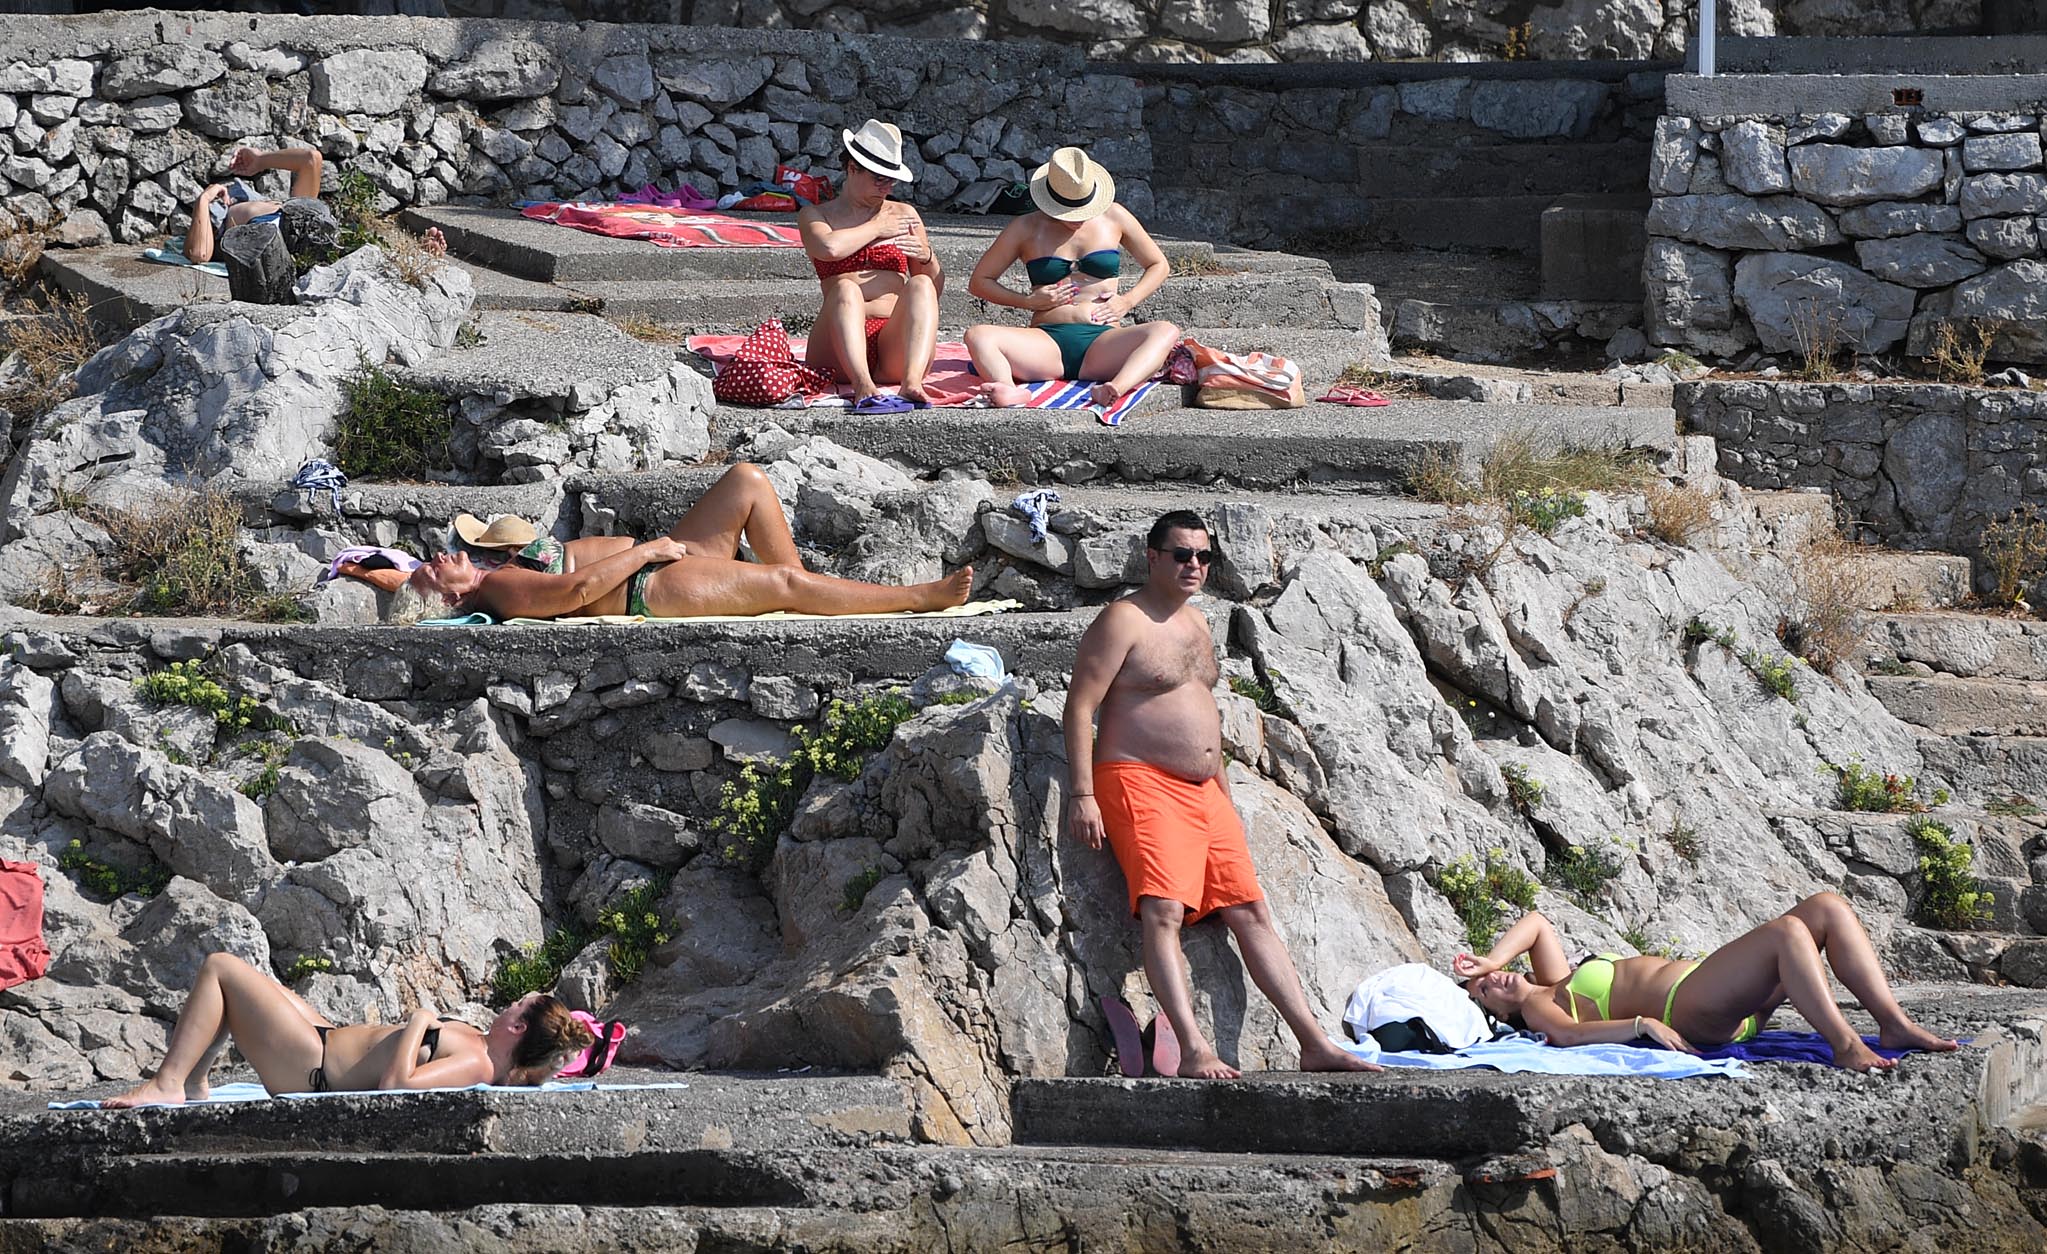 Dobrim turističkim rezultatima doprinose i privatni iznajmljivači koji odlično posluju čitavo ljeto / Foto Ivica TOMIĆ